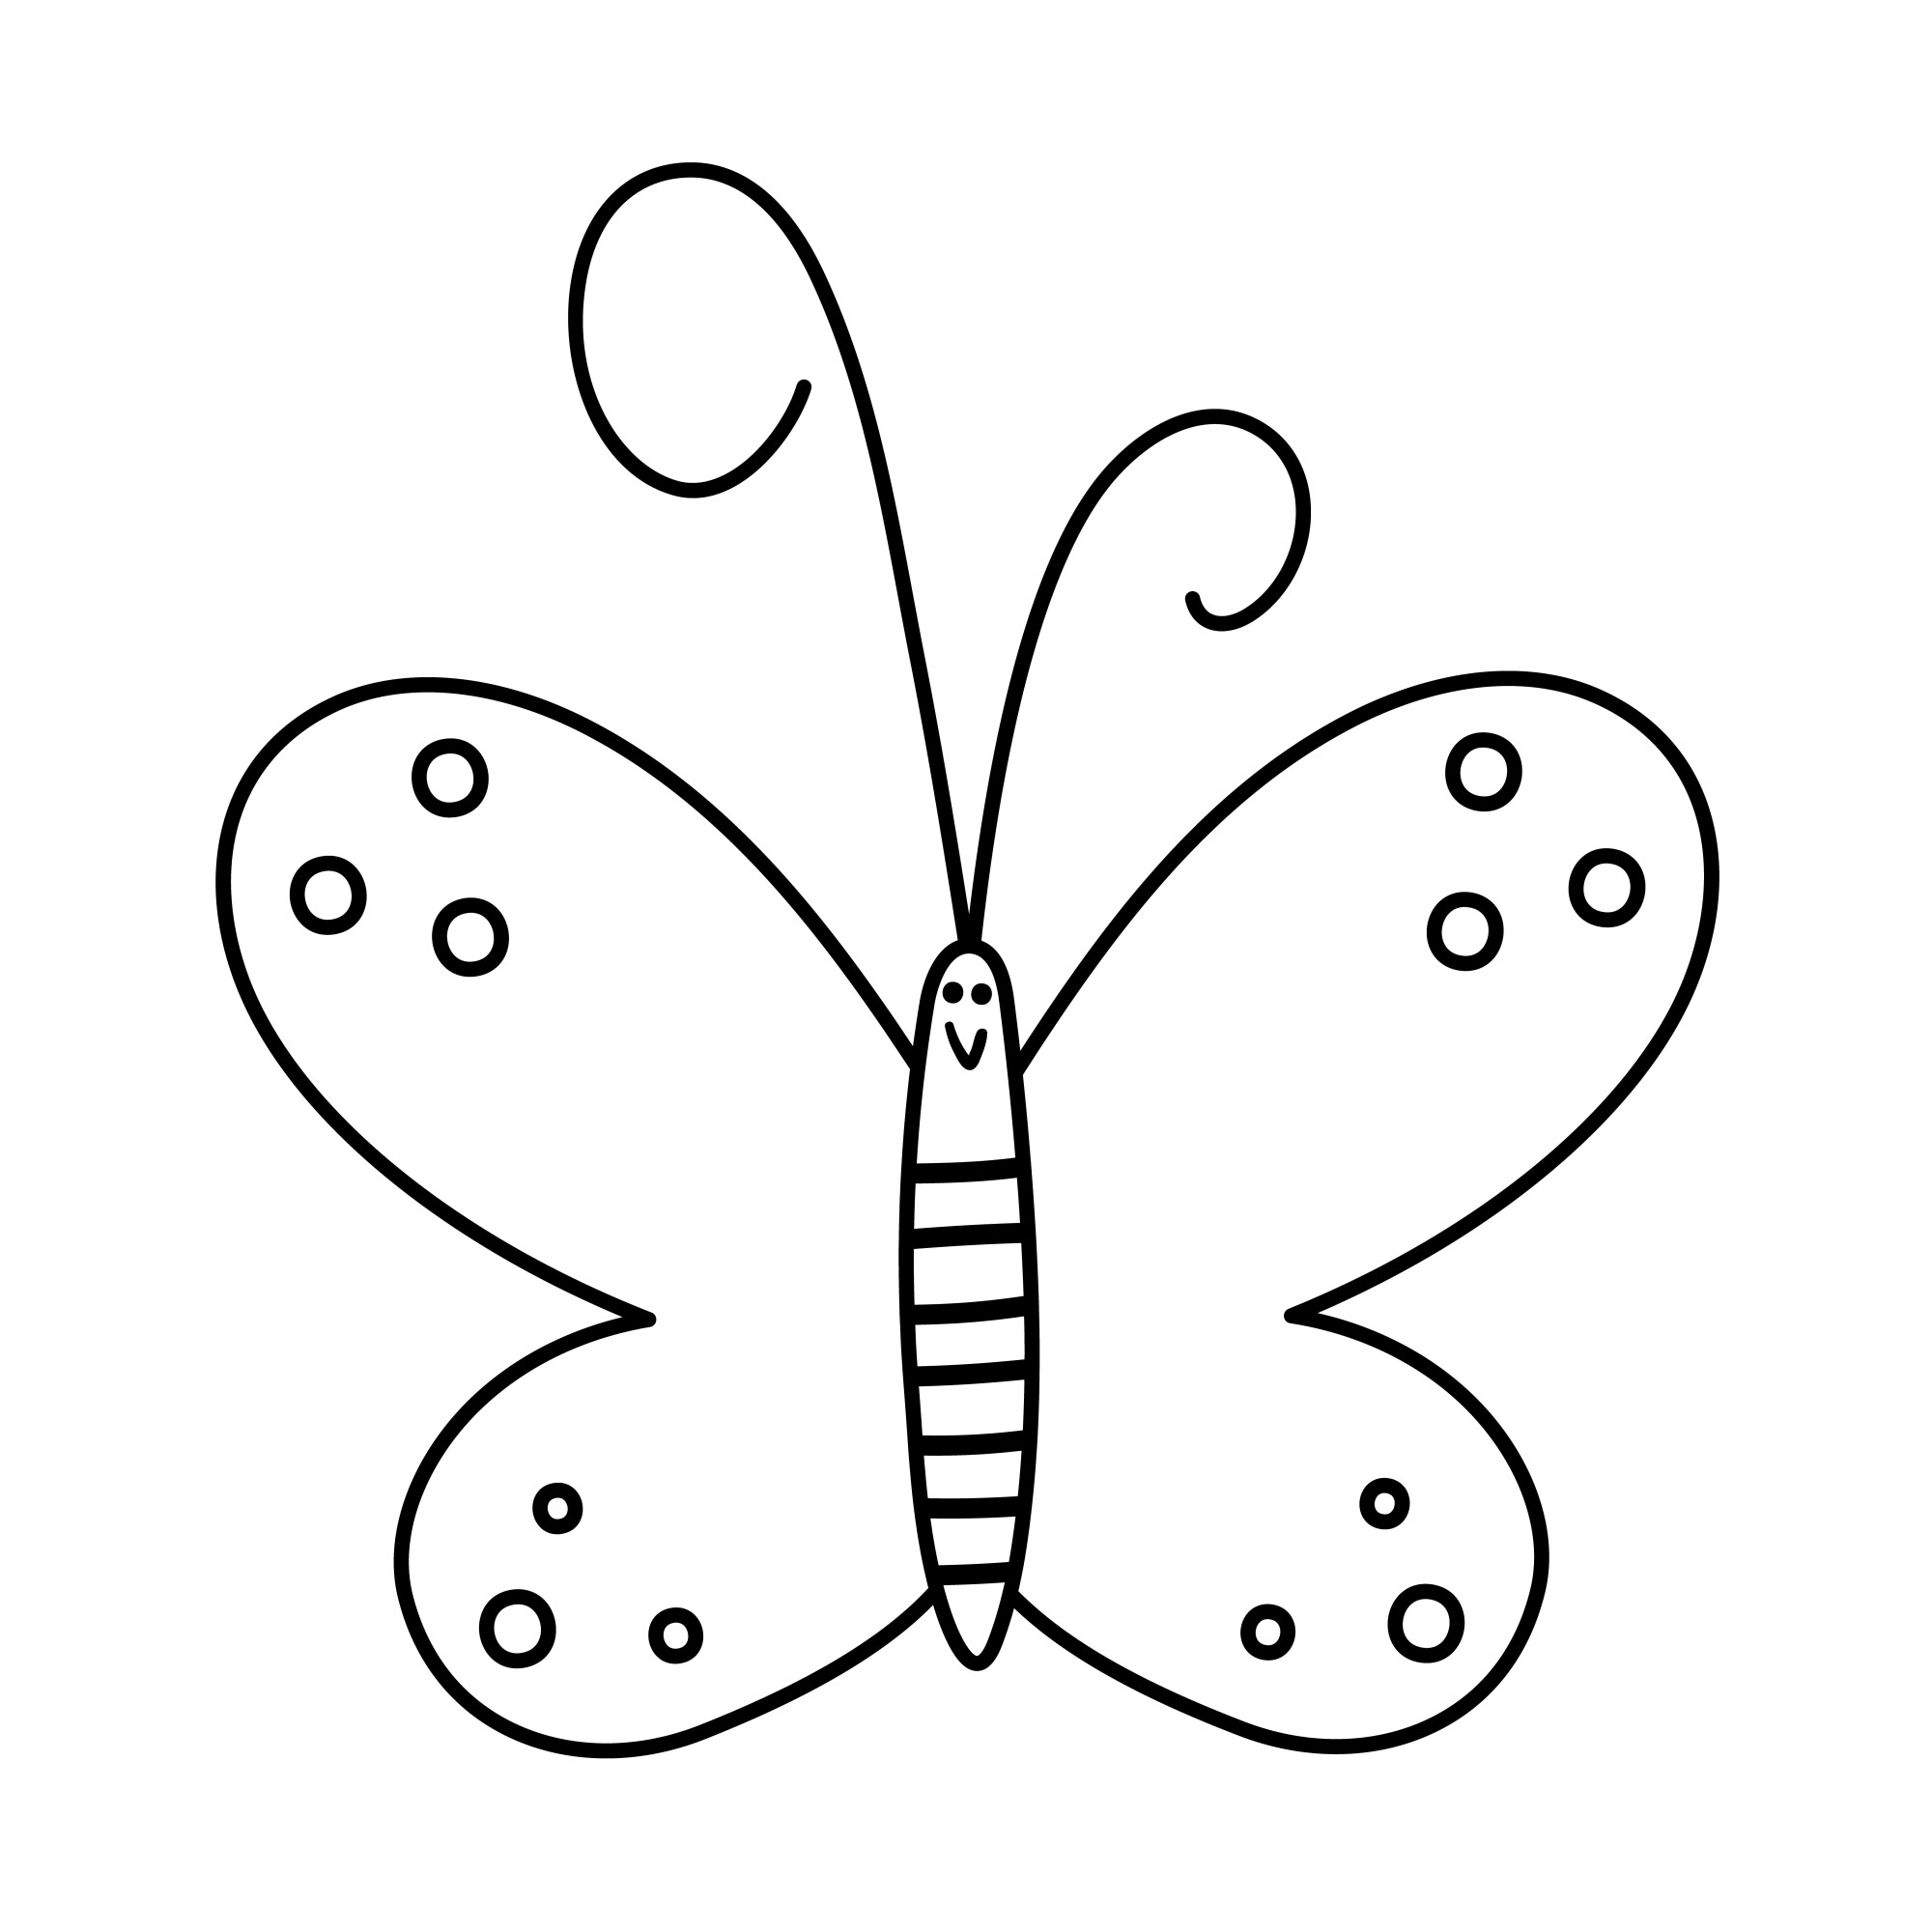 Раскраска для детей: контур бабочки из мультфильма